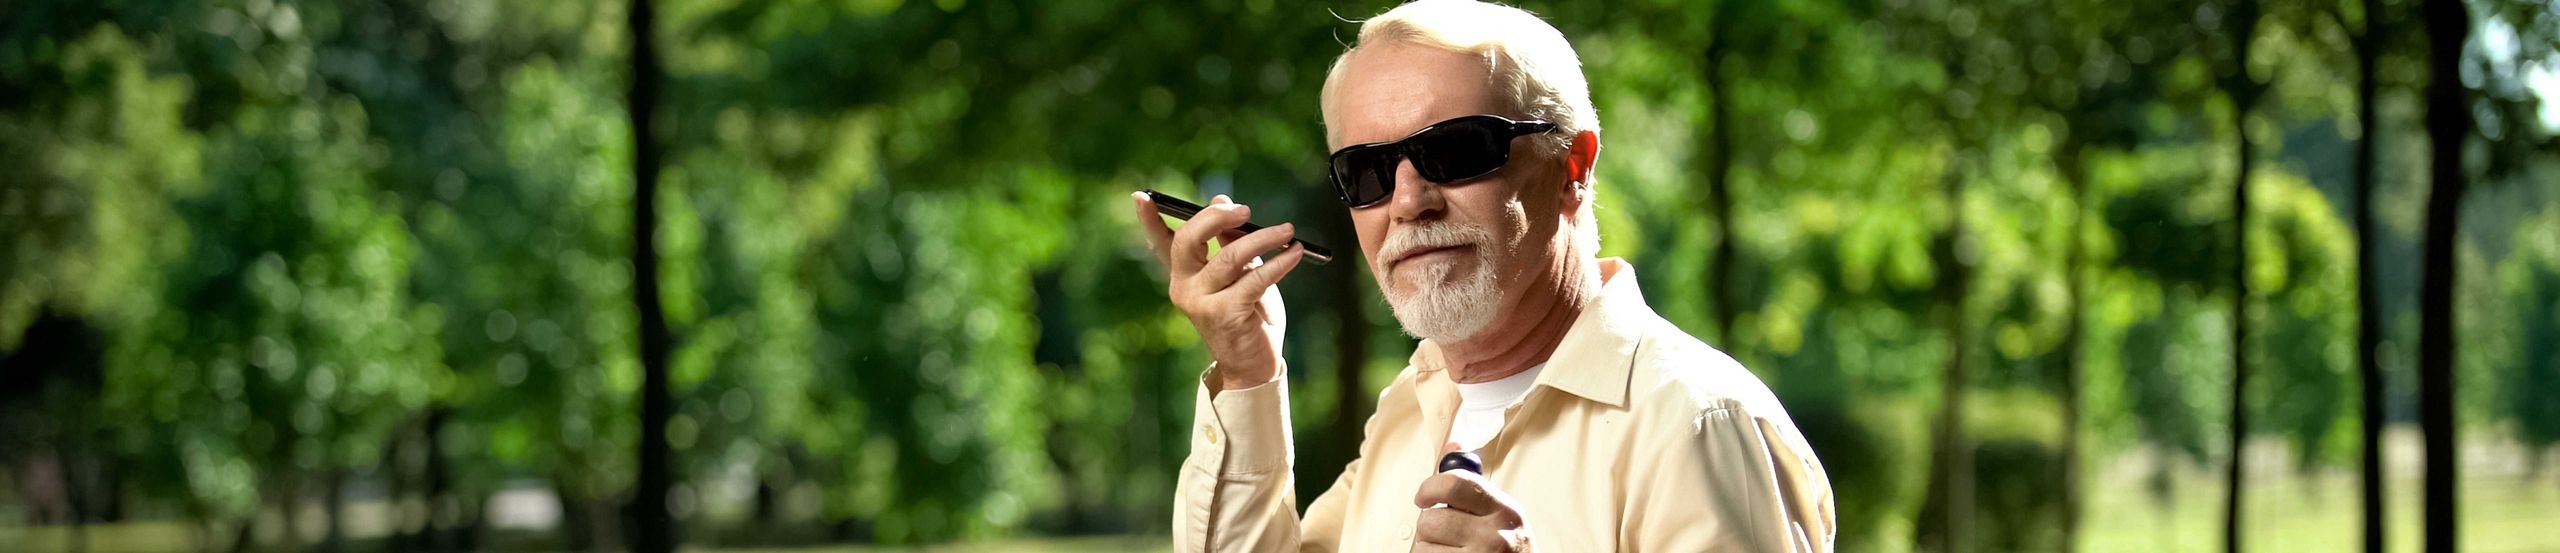 Älterer blinder Mann sitzt in Park und hört etwas auf seinem Smartphone.